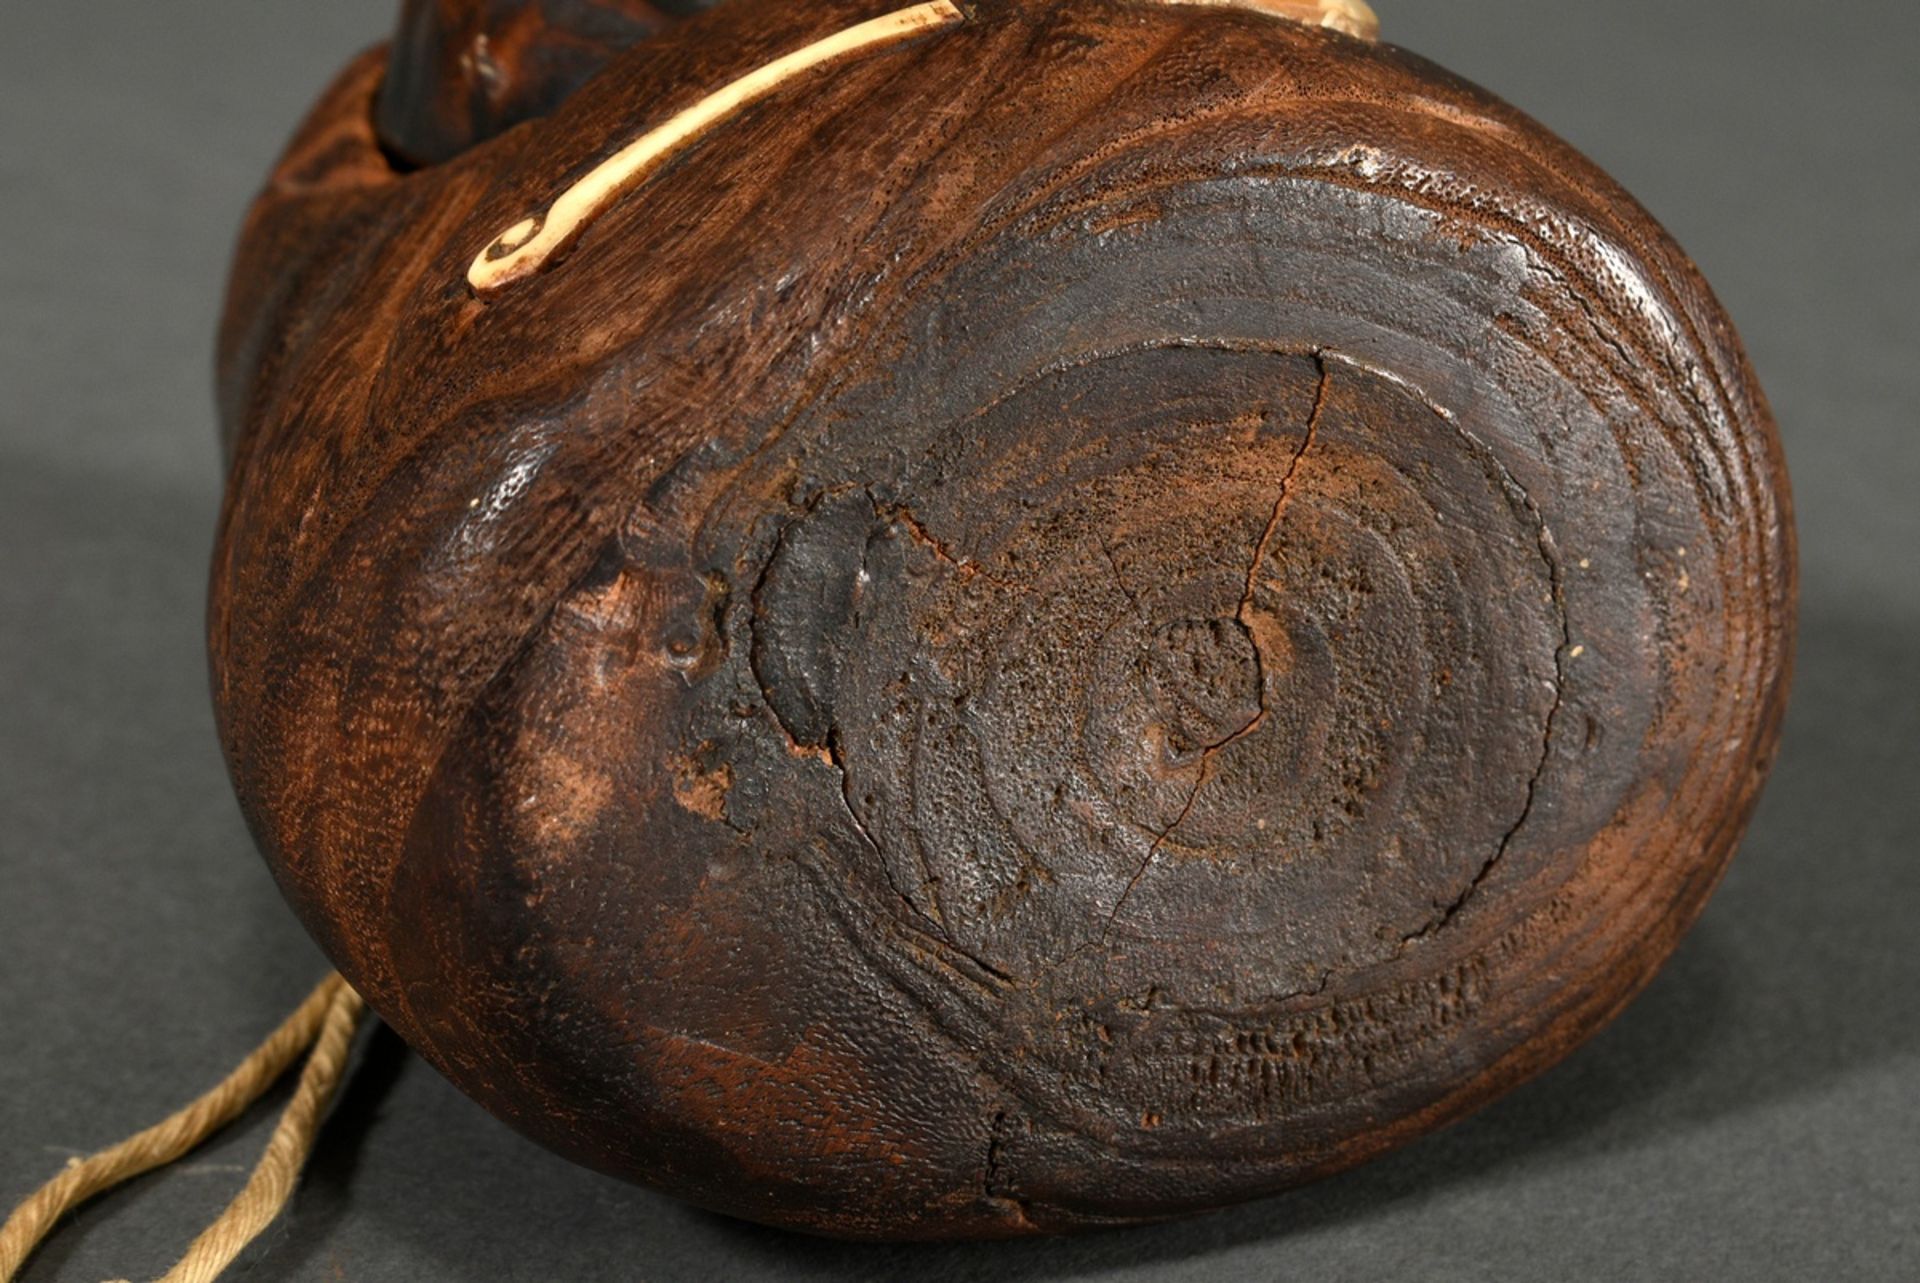 Hinoki Holz Tonkotsu Tabakbehälter mit Buchsbaum Maskendeckel „Daruma“ sowie Perlmutt- und Hirschho - Bild 3 aus 4